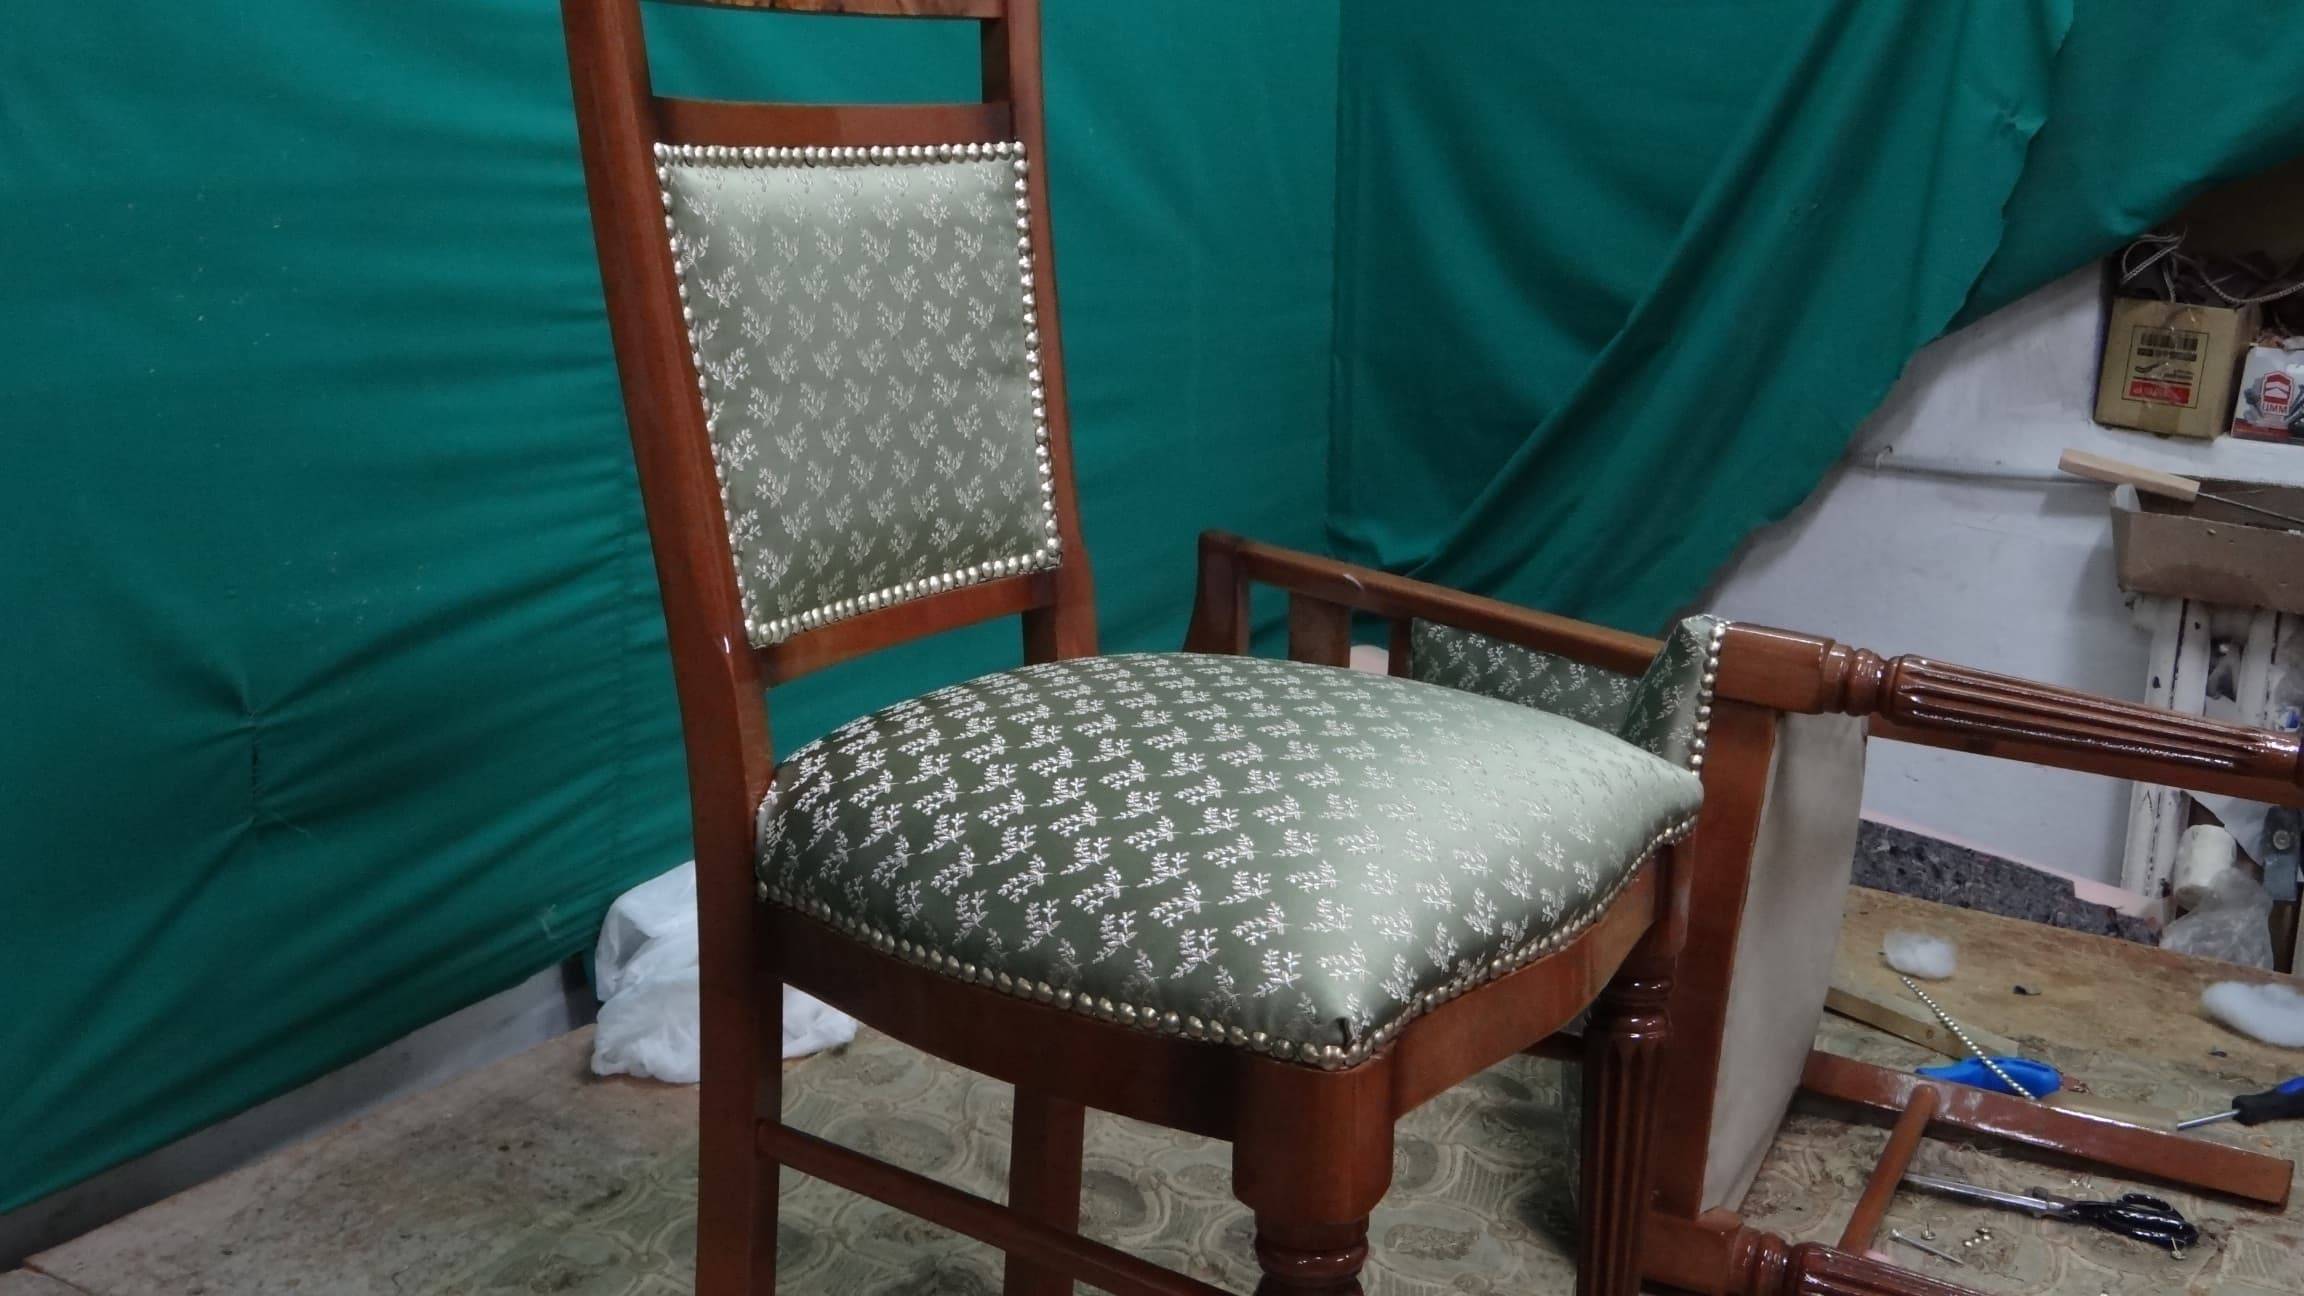 Перетяжка стульев: для чего она нужна и какую ткань лучше выбрать